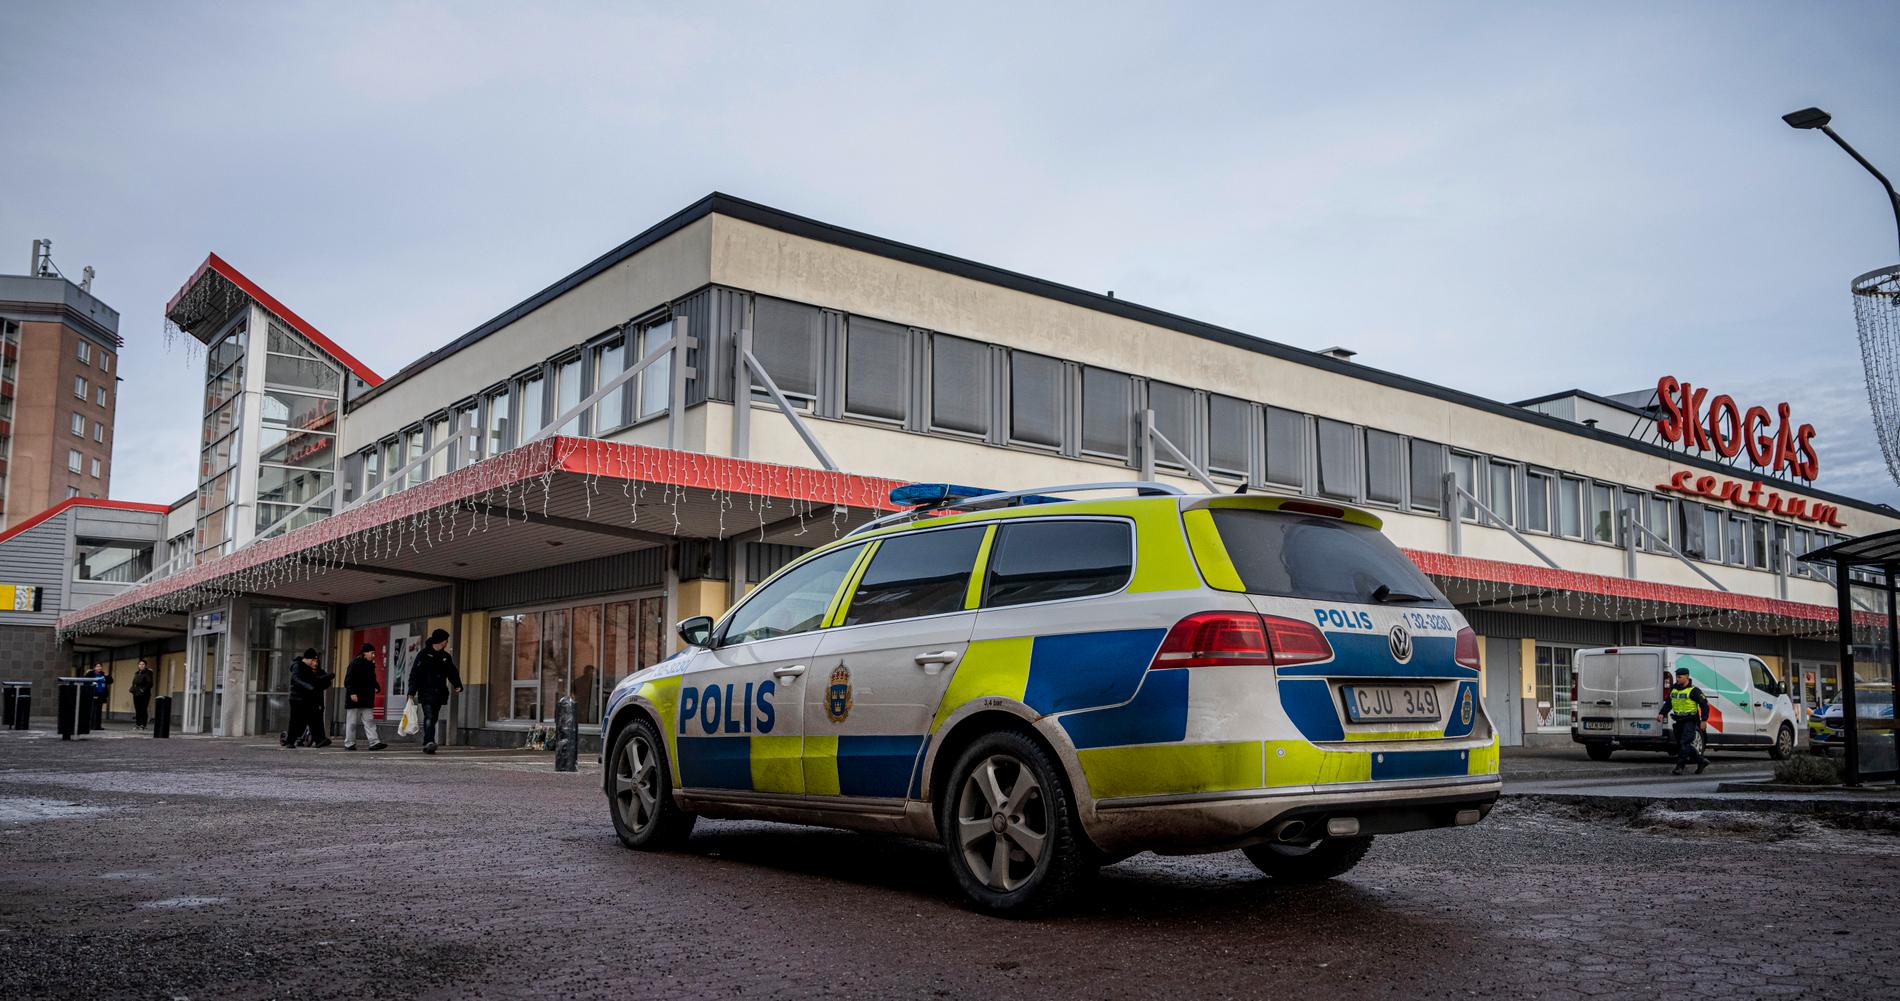 15-åringen sköts till döds vid en restaurang i Skogås centrum. 